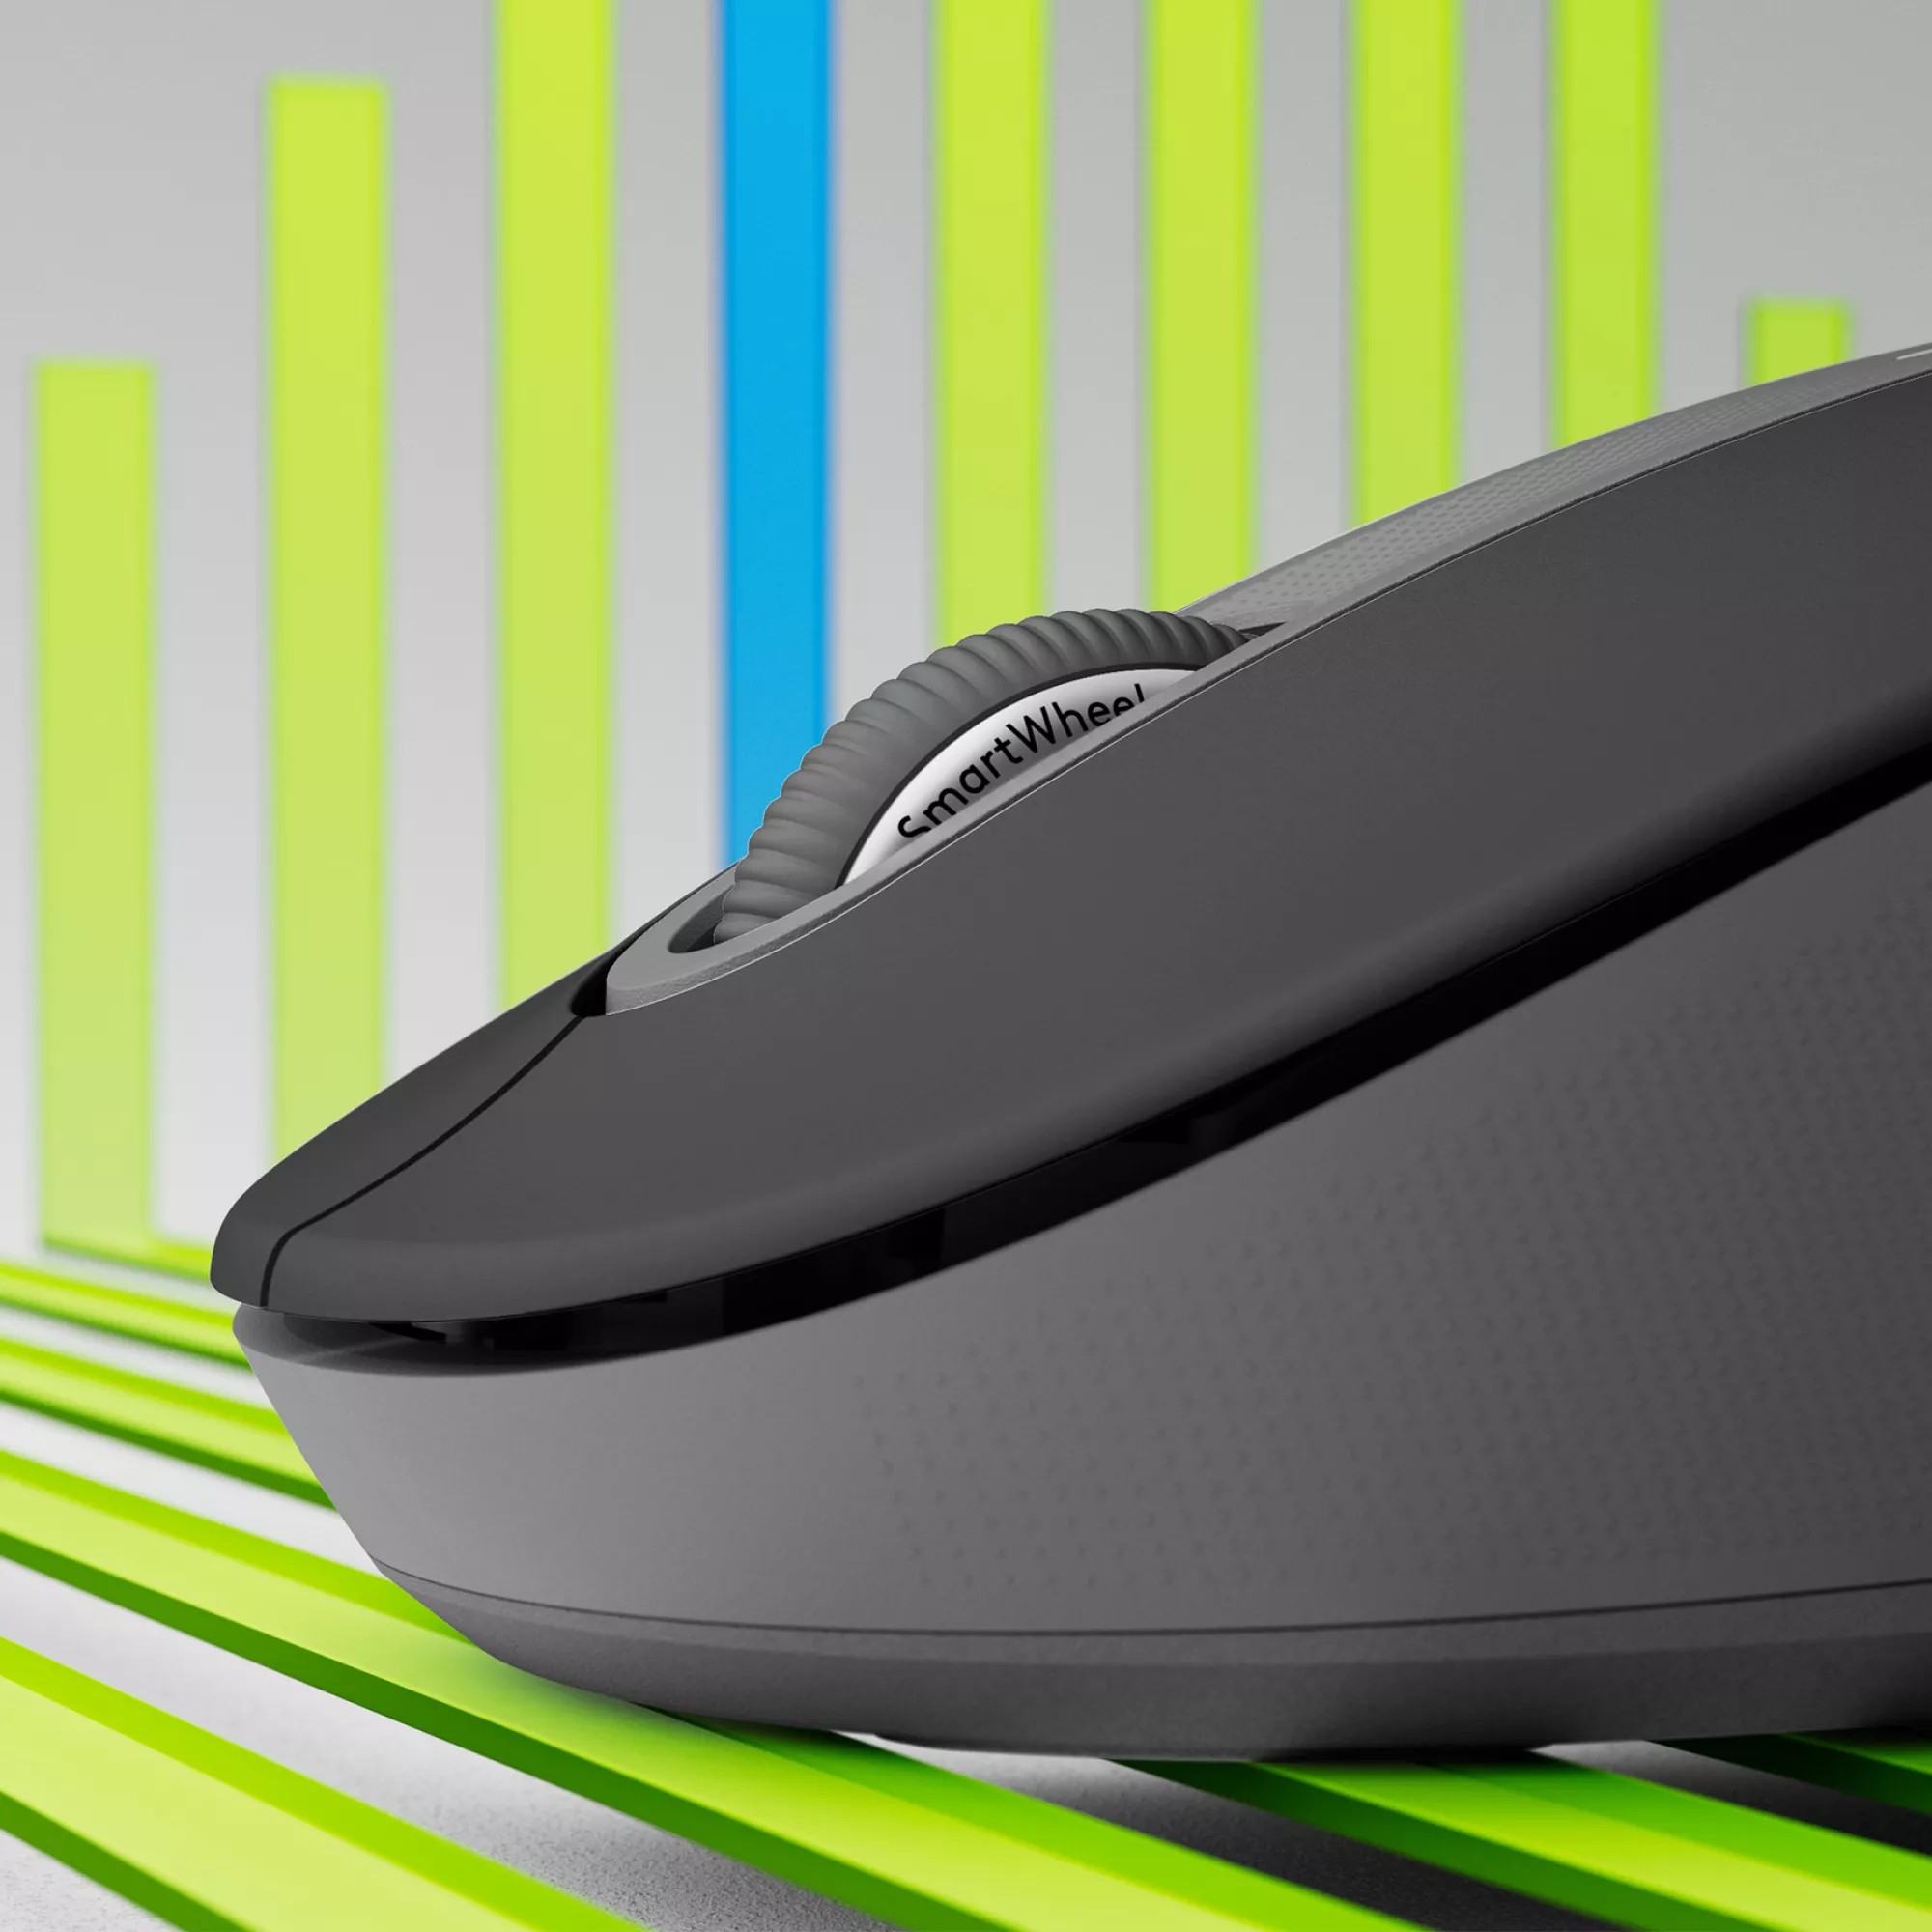 Vente LOGITECH Signature M650 L LEFT Mouse large size Logitech au meilleur prix - visuel 2